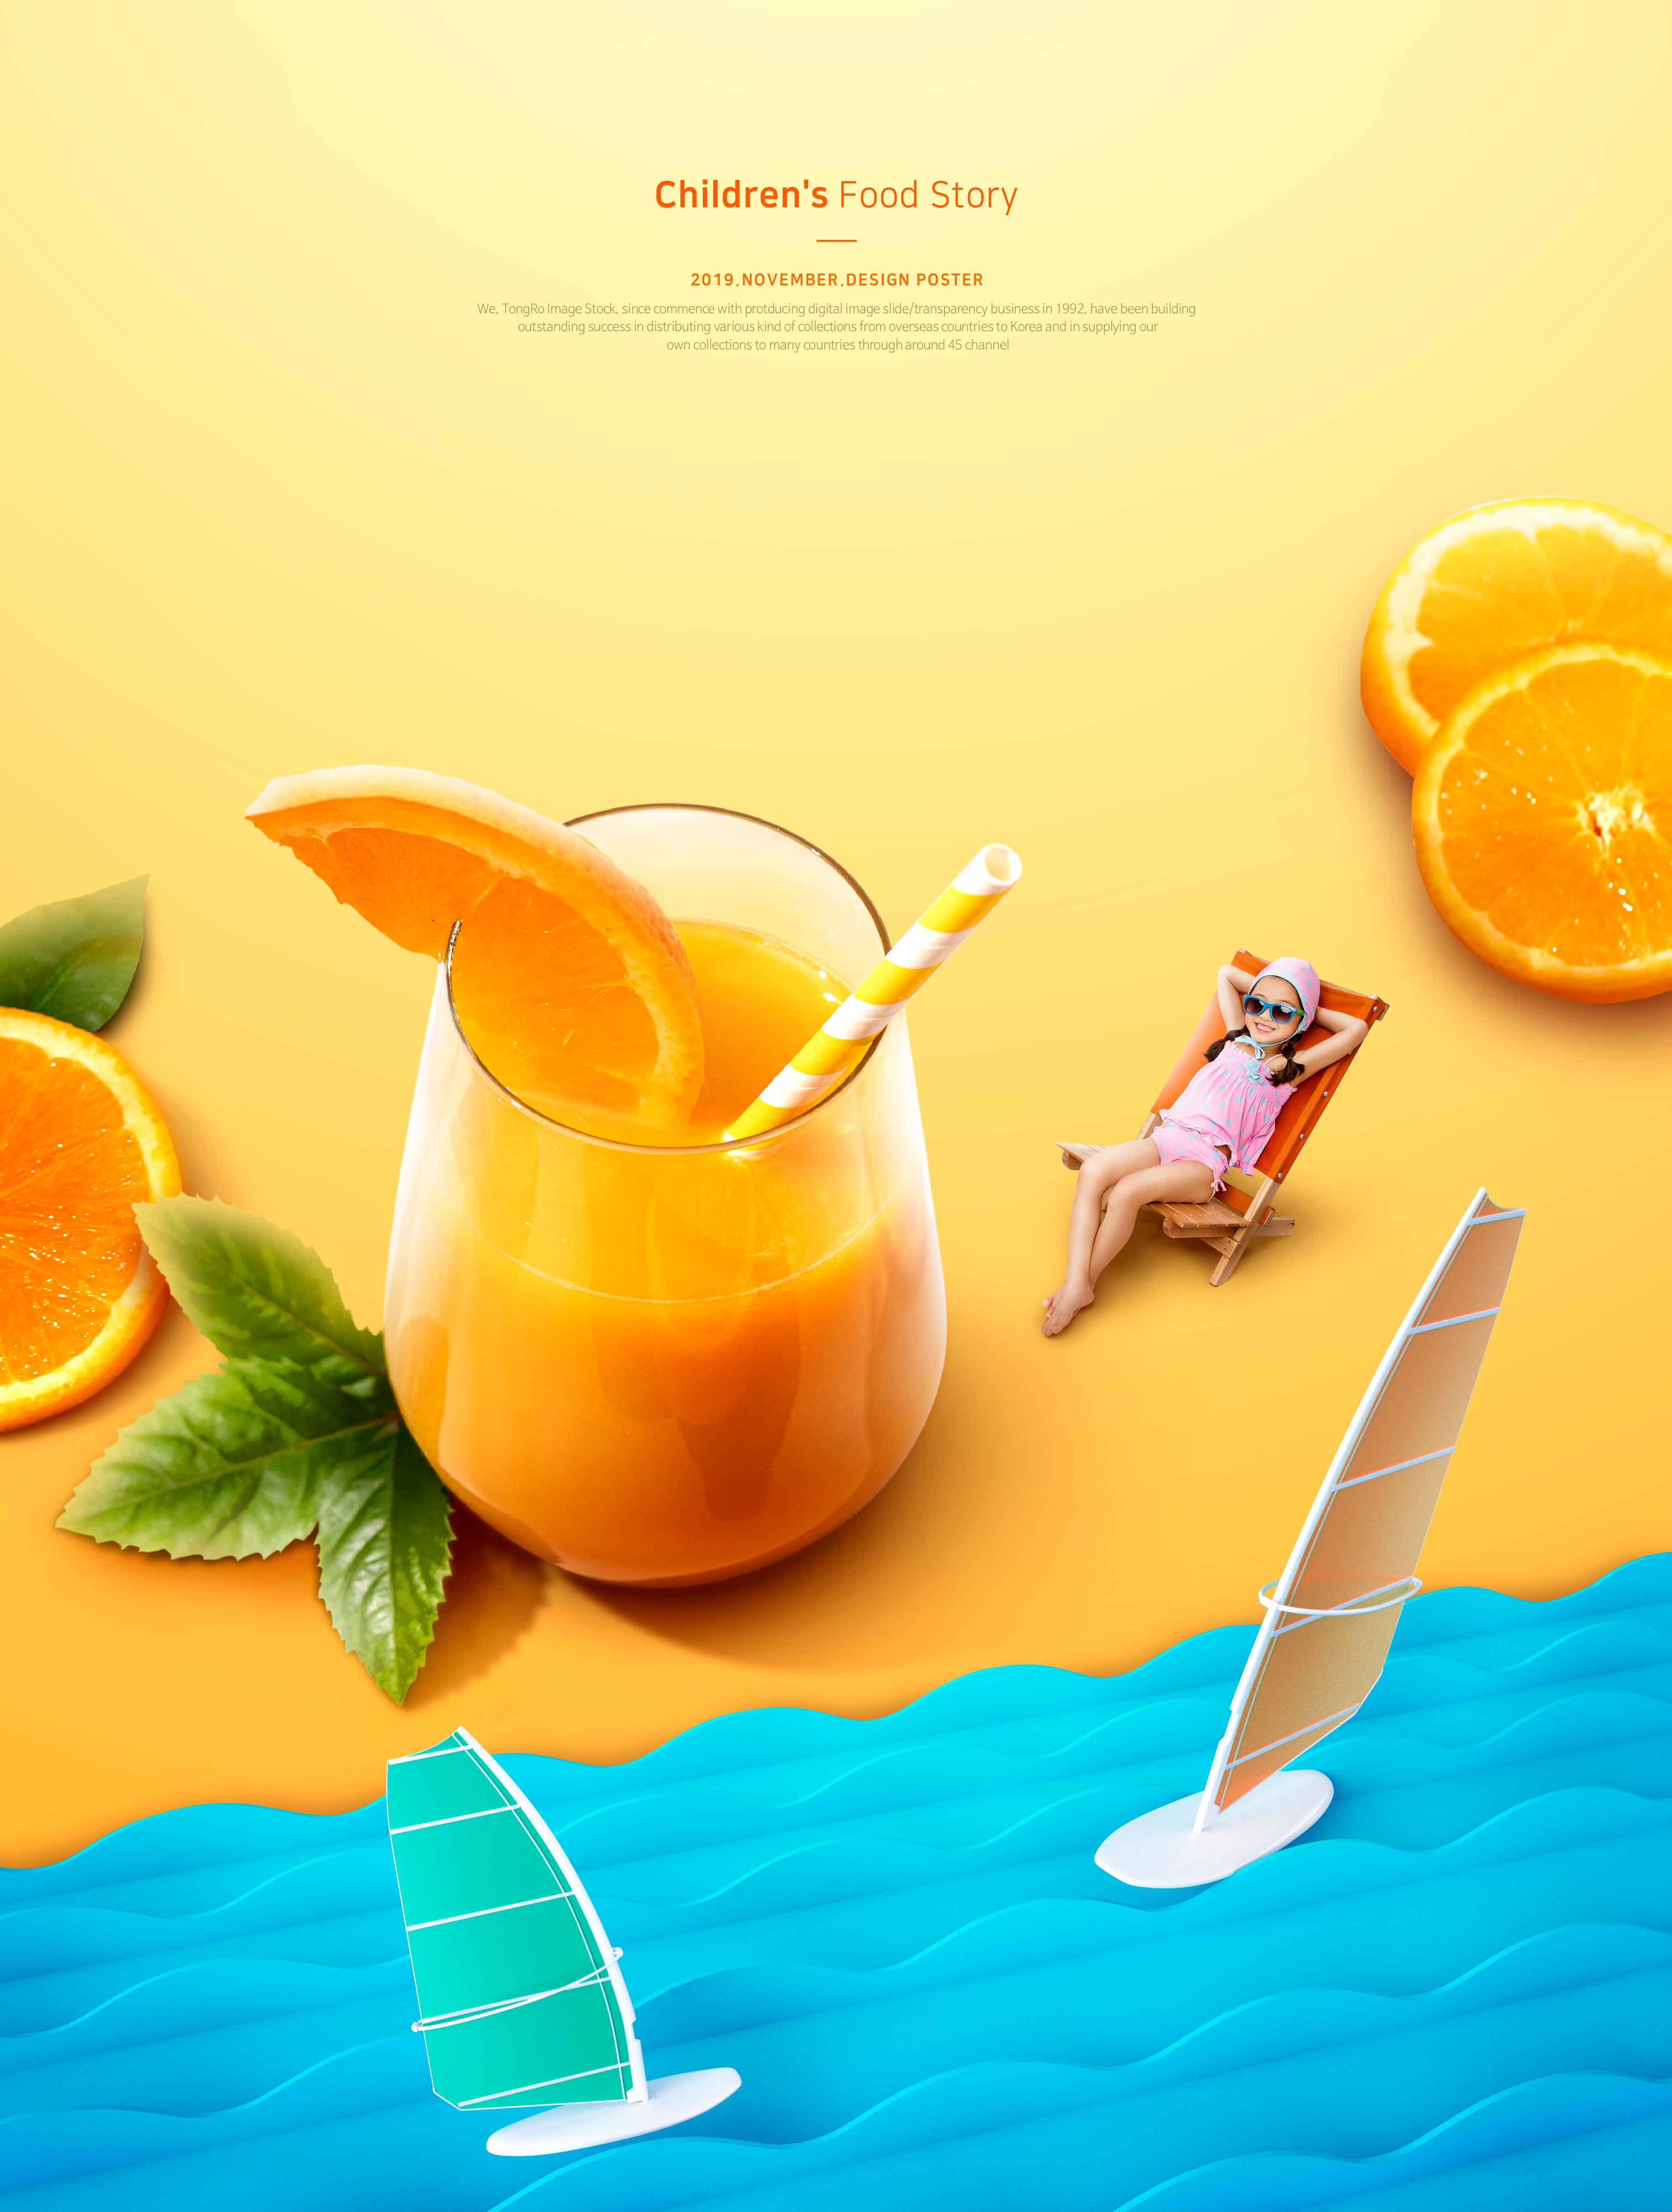 儿童食品故事夏季橙汁推广海报PSD素材第一素材精选模板插图